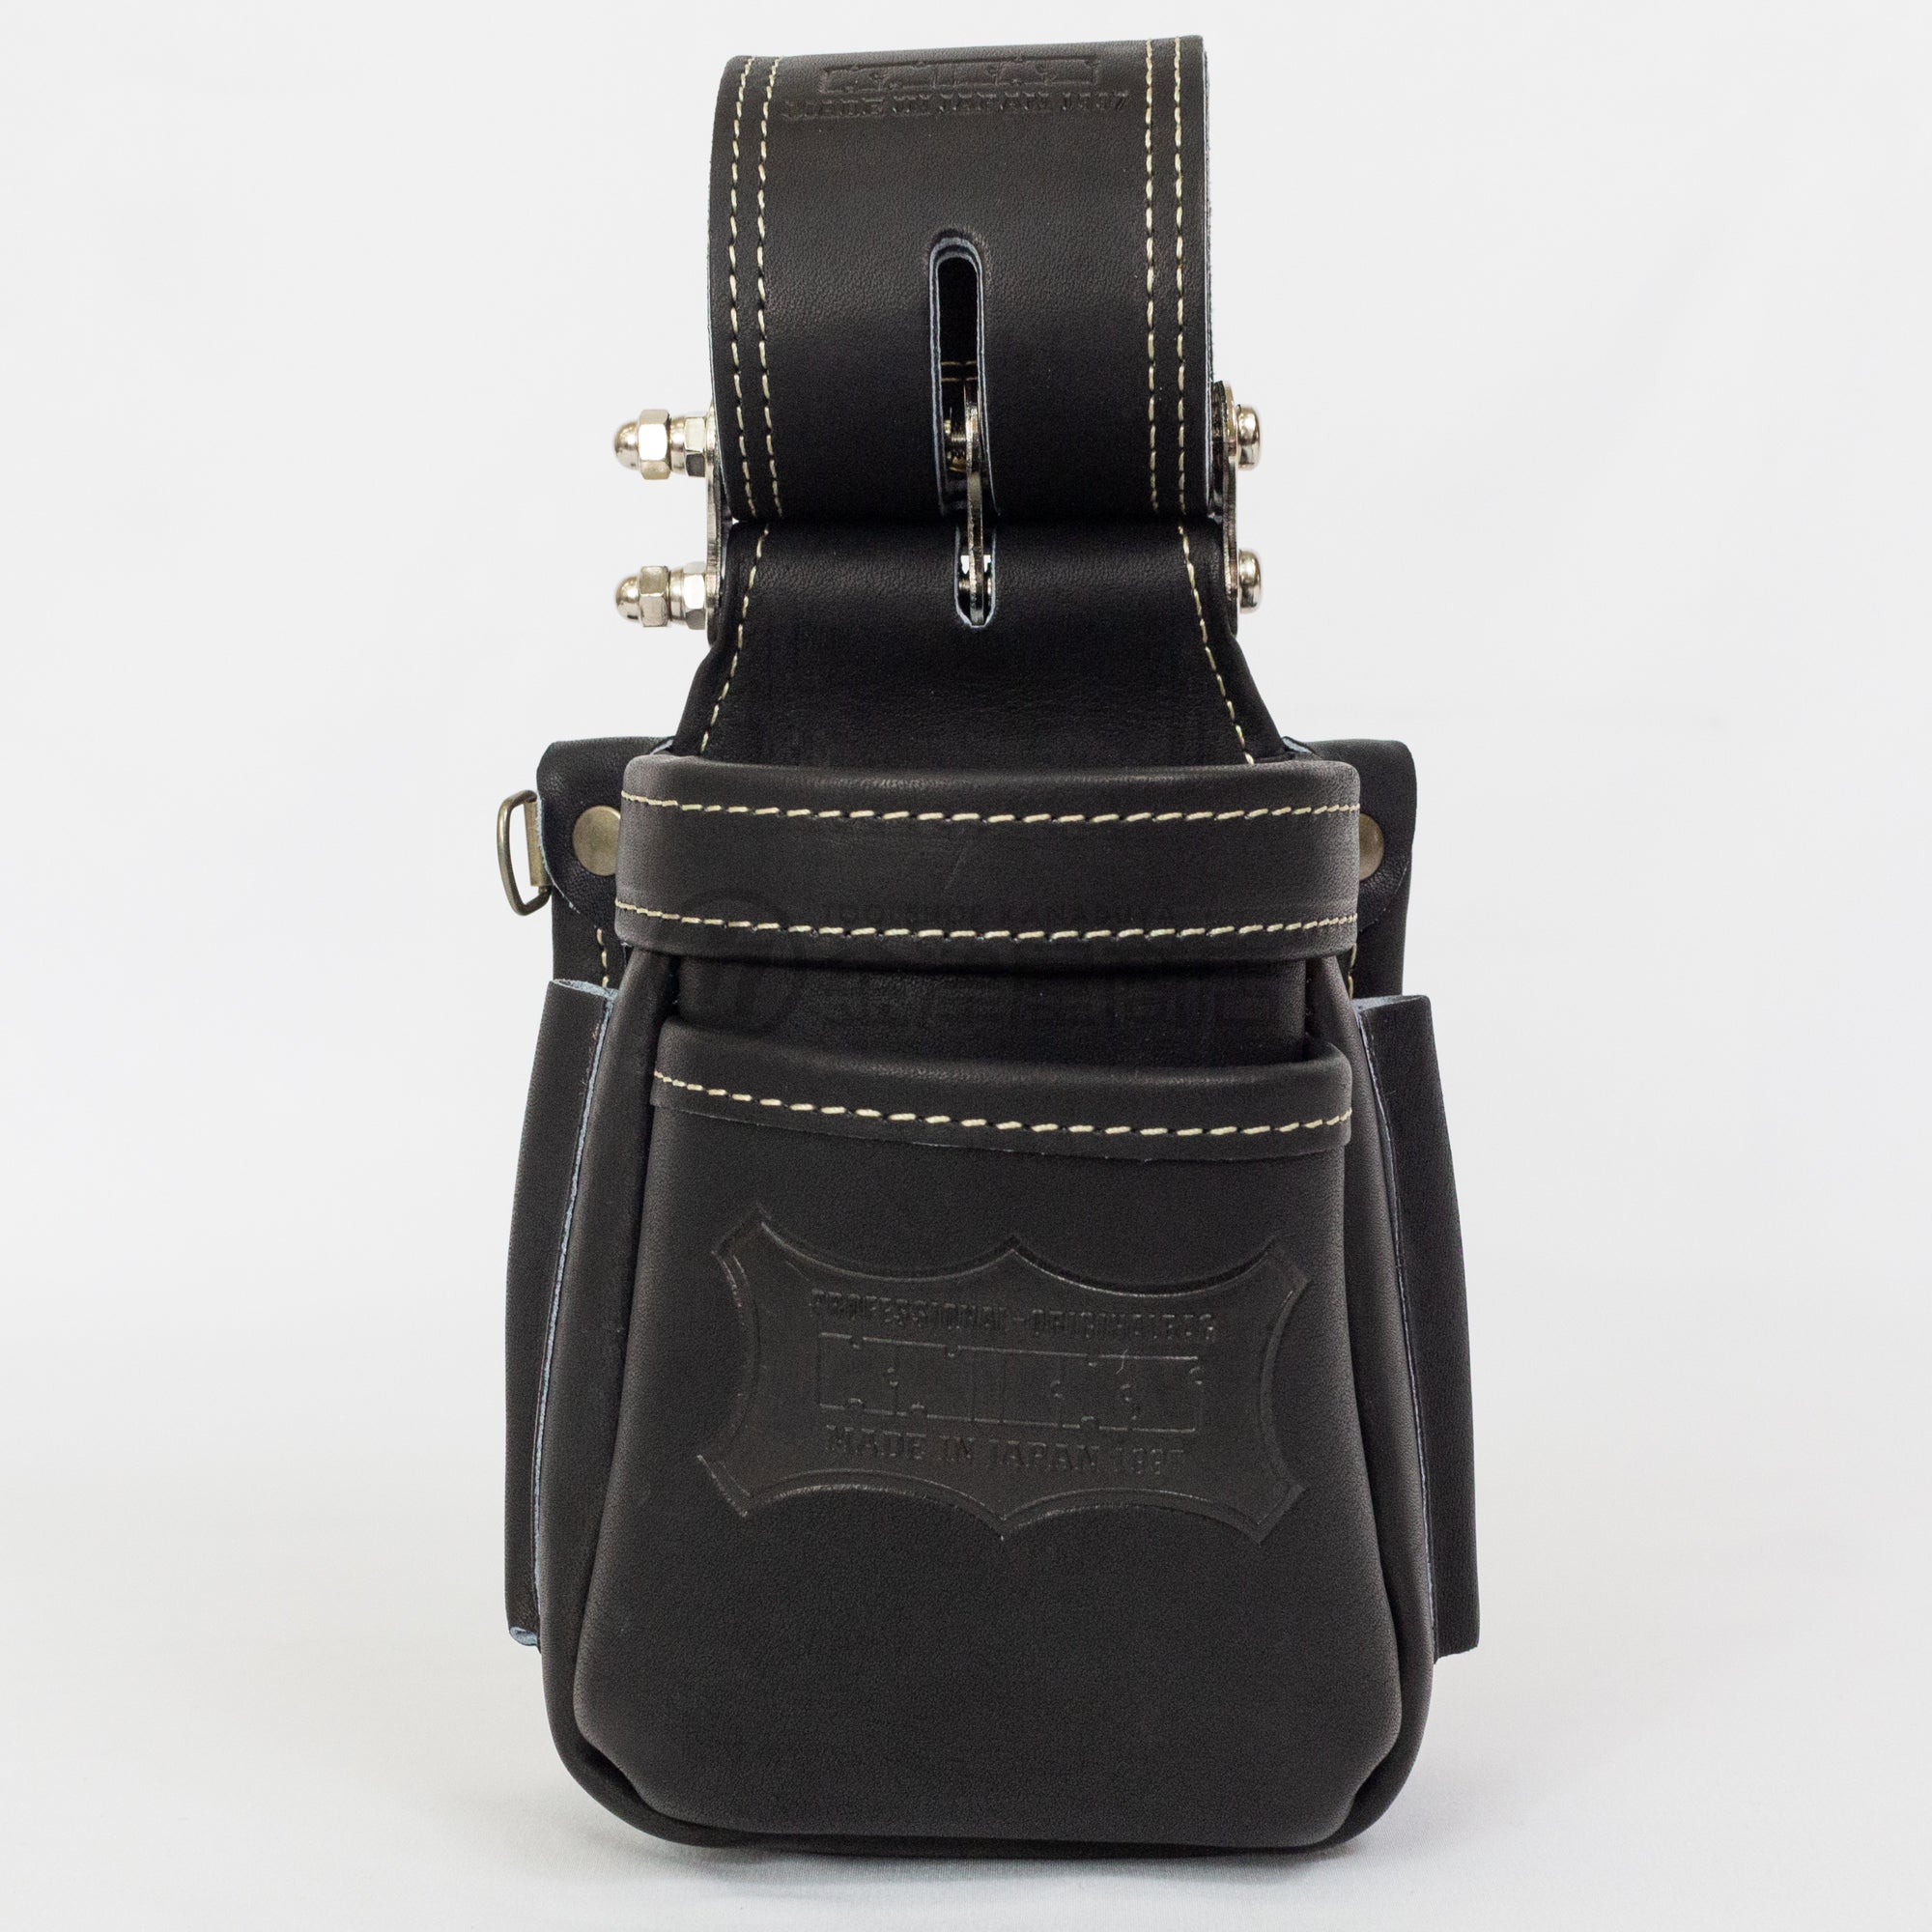 ニックス チェーン式最高級硬式グローブ革小物腰袋(ブラック) KGB-201VADX - 3